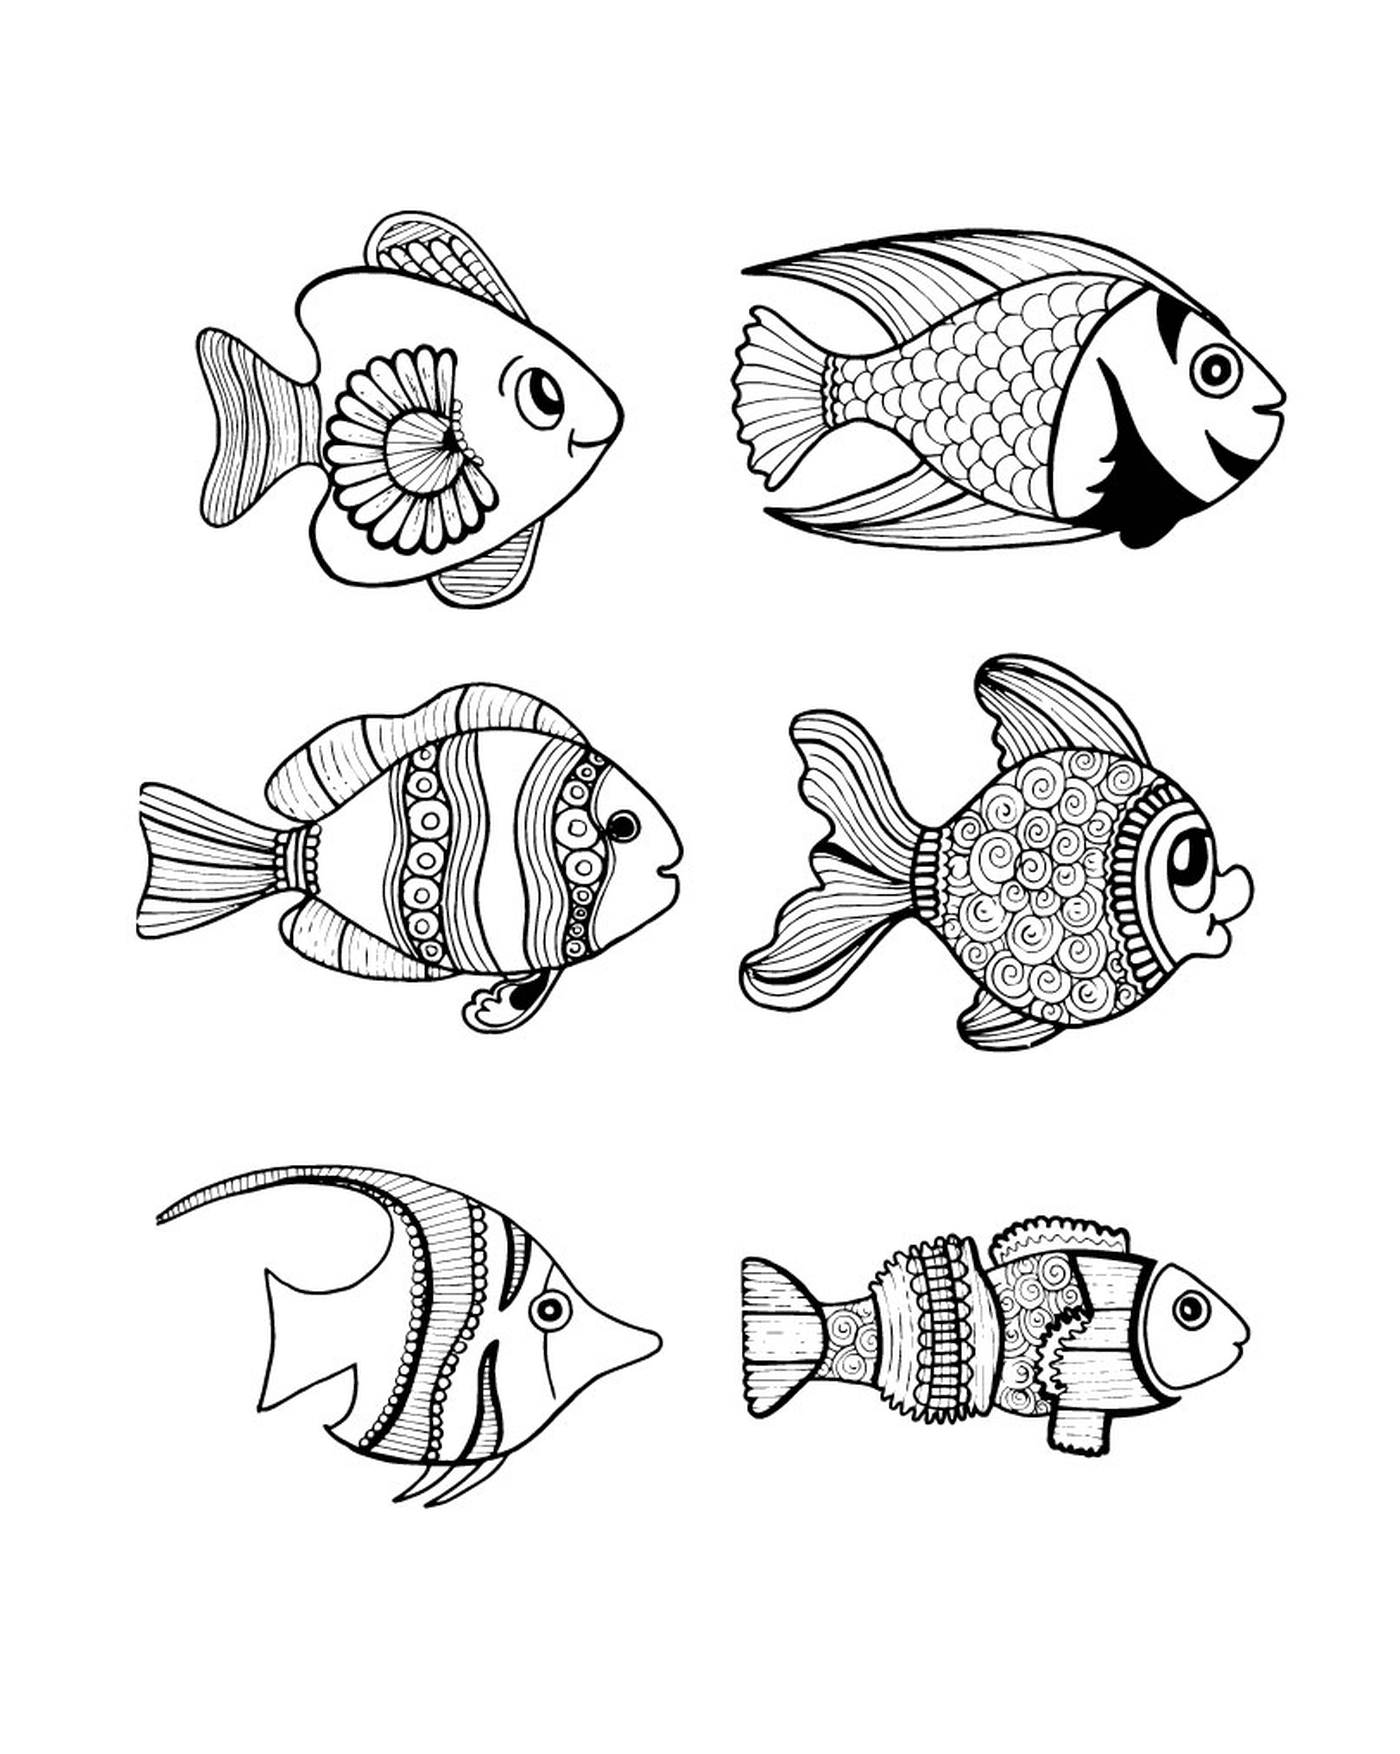  一套由6个黑白鱼图纸组成的6个黑白鱼图纸 